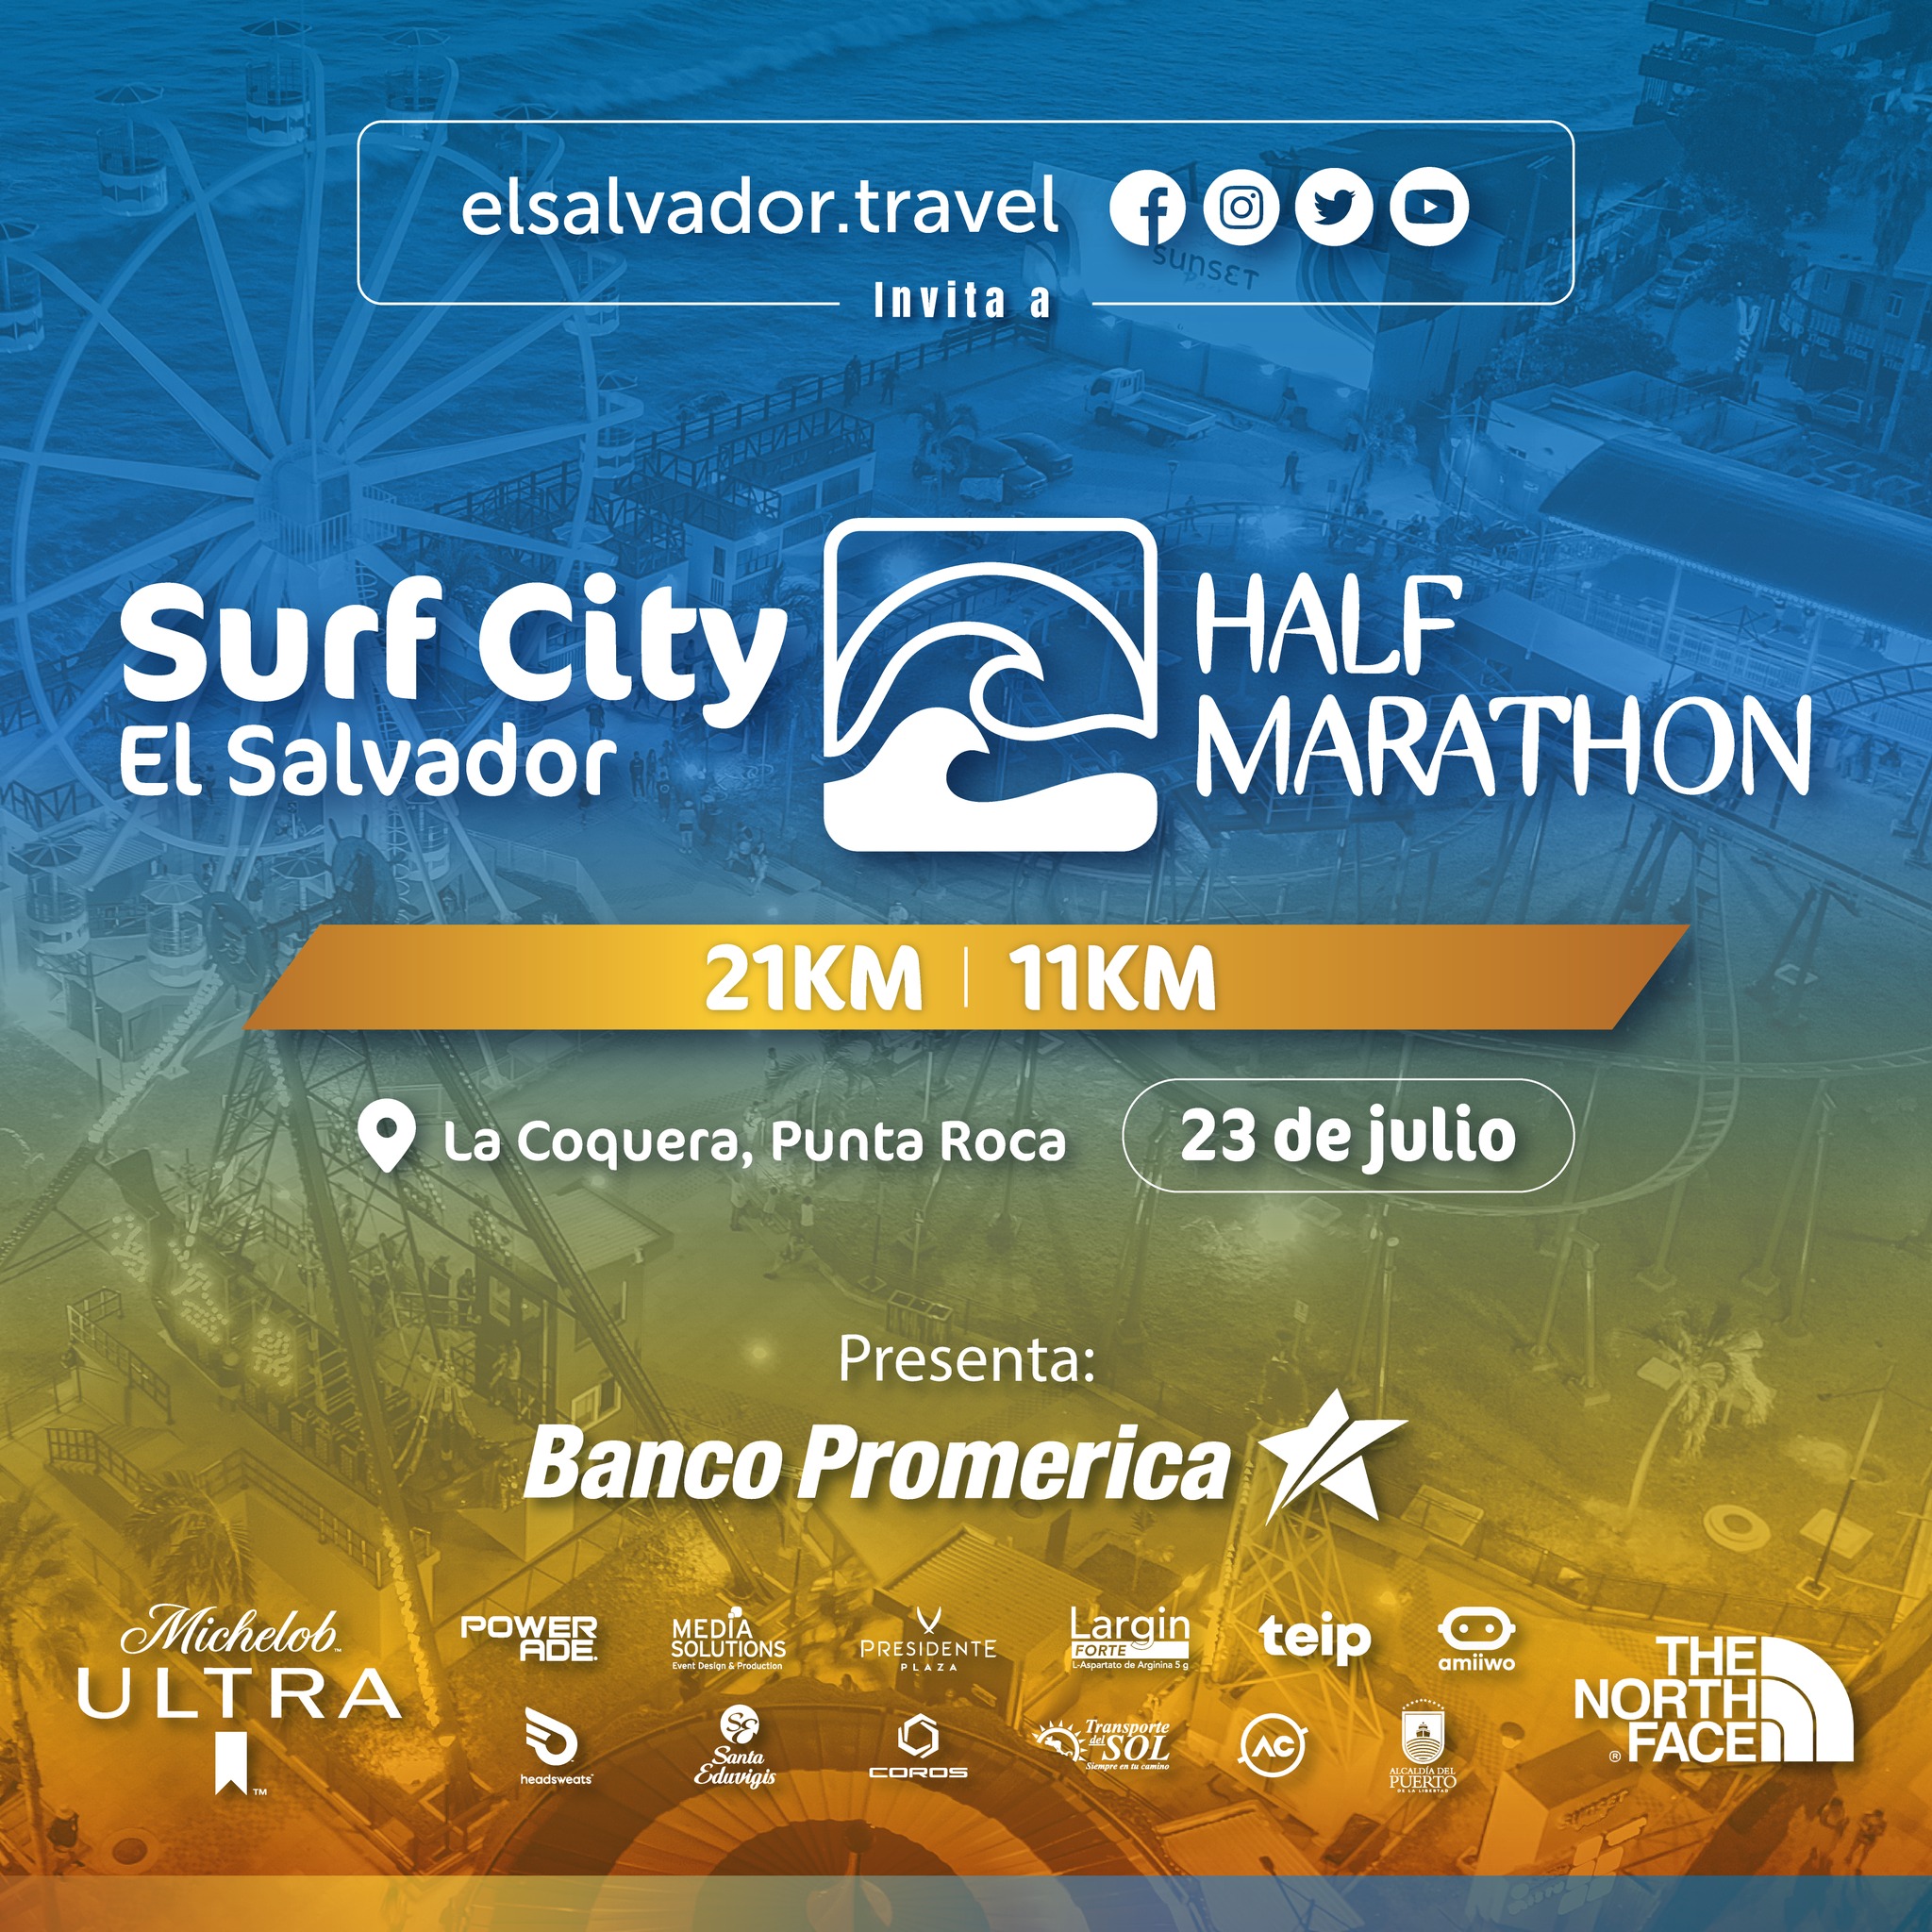 Surf City El Salvador Half Marathon